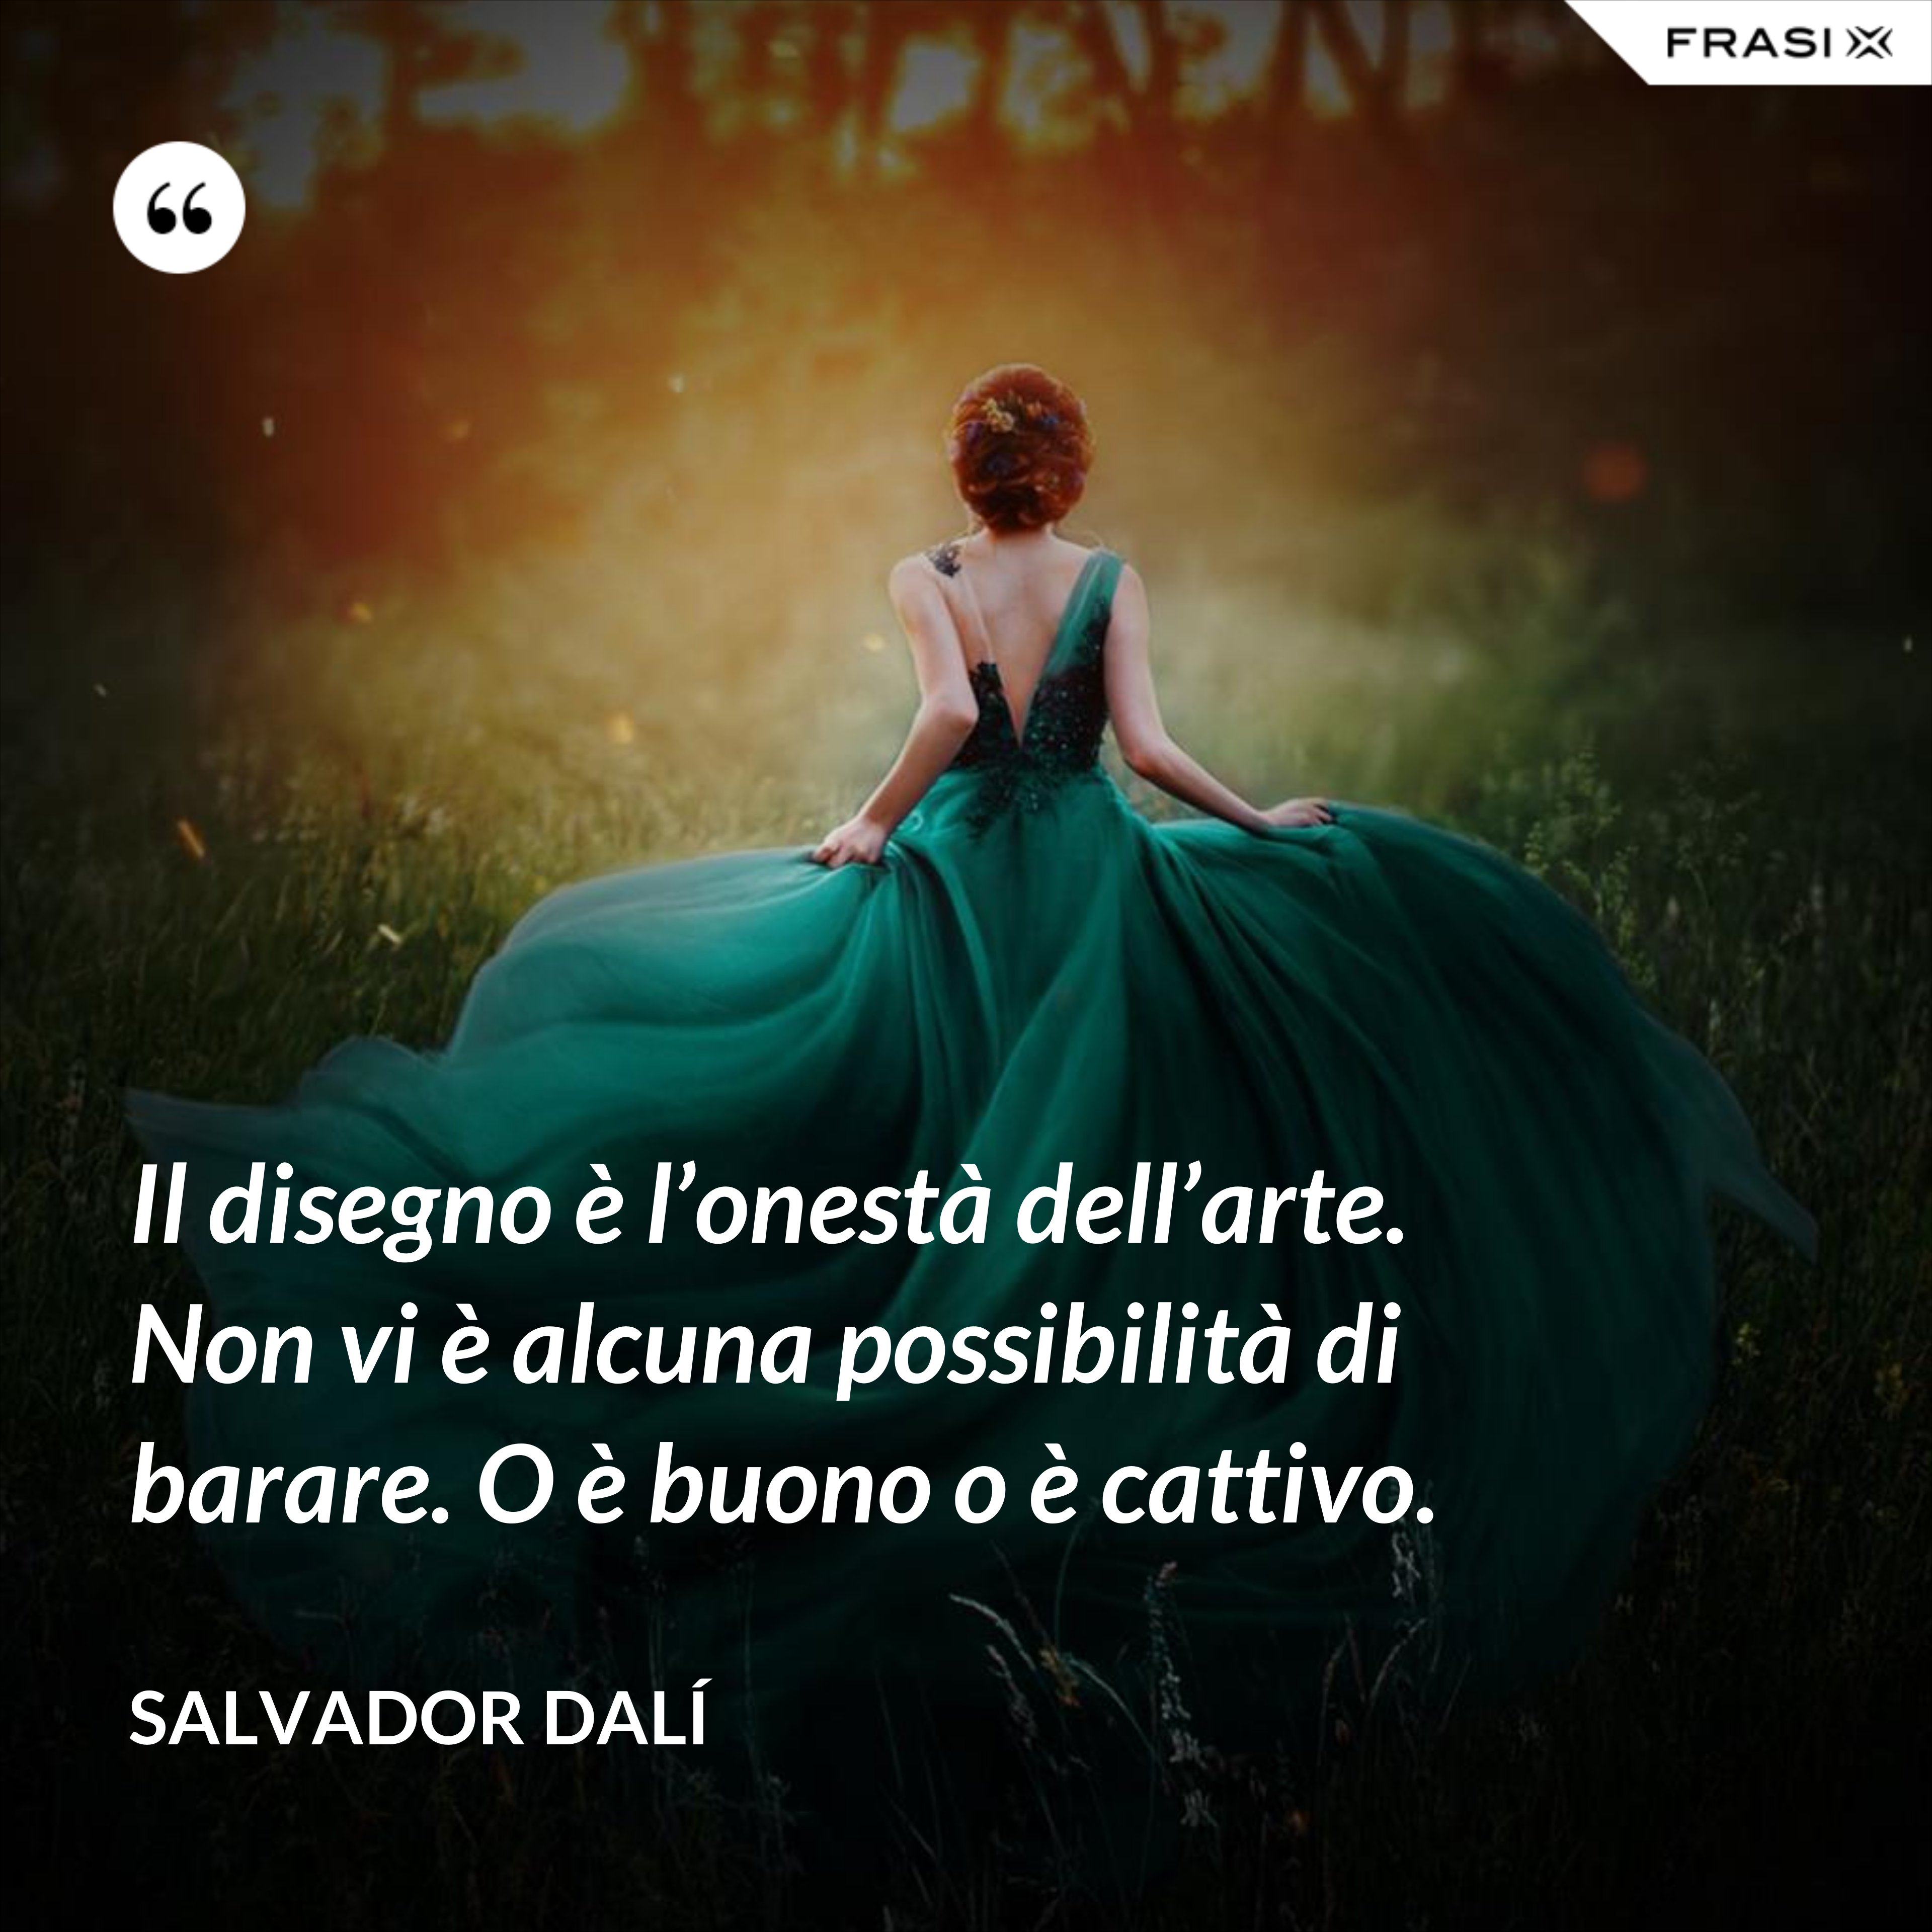 Il disegno è l’onestà dell’arte. Non vi è alcuna possibilità di barare. O è buono o è cattivo. - Salvador Dalí